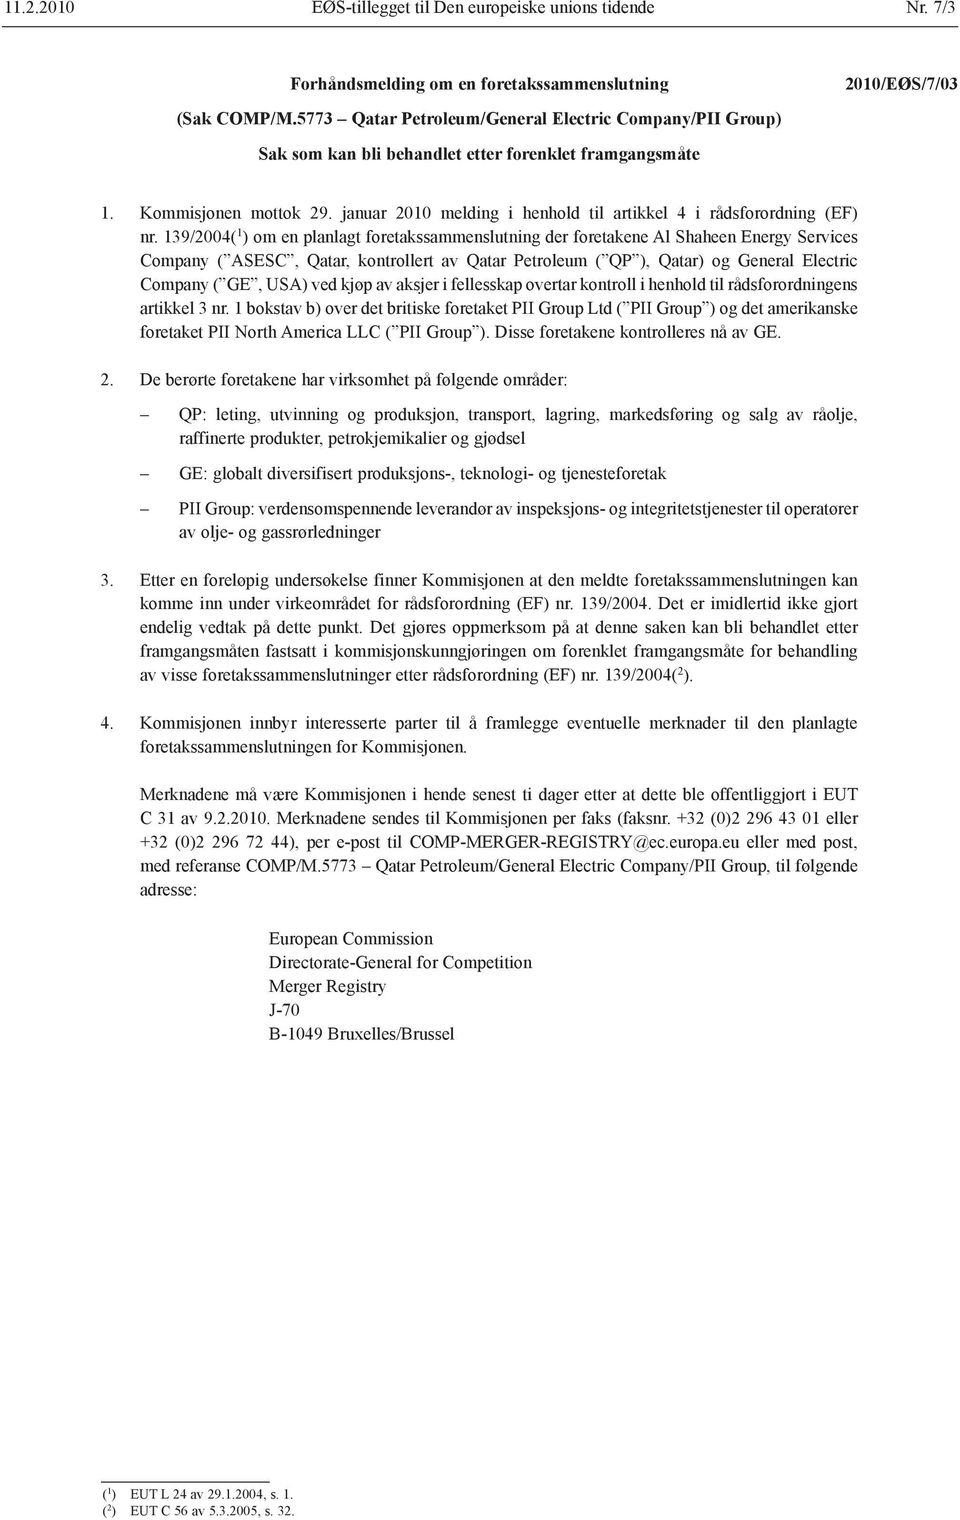 januar 2010 melding i henhold til artikkel 4 i rådsforordning (EF) nr.